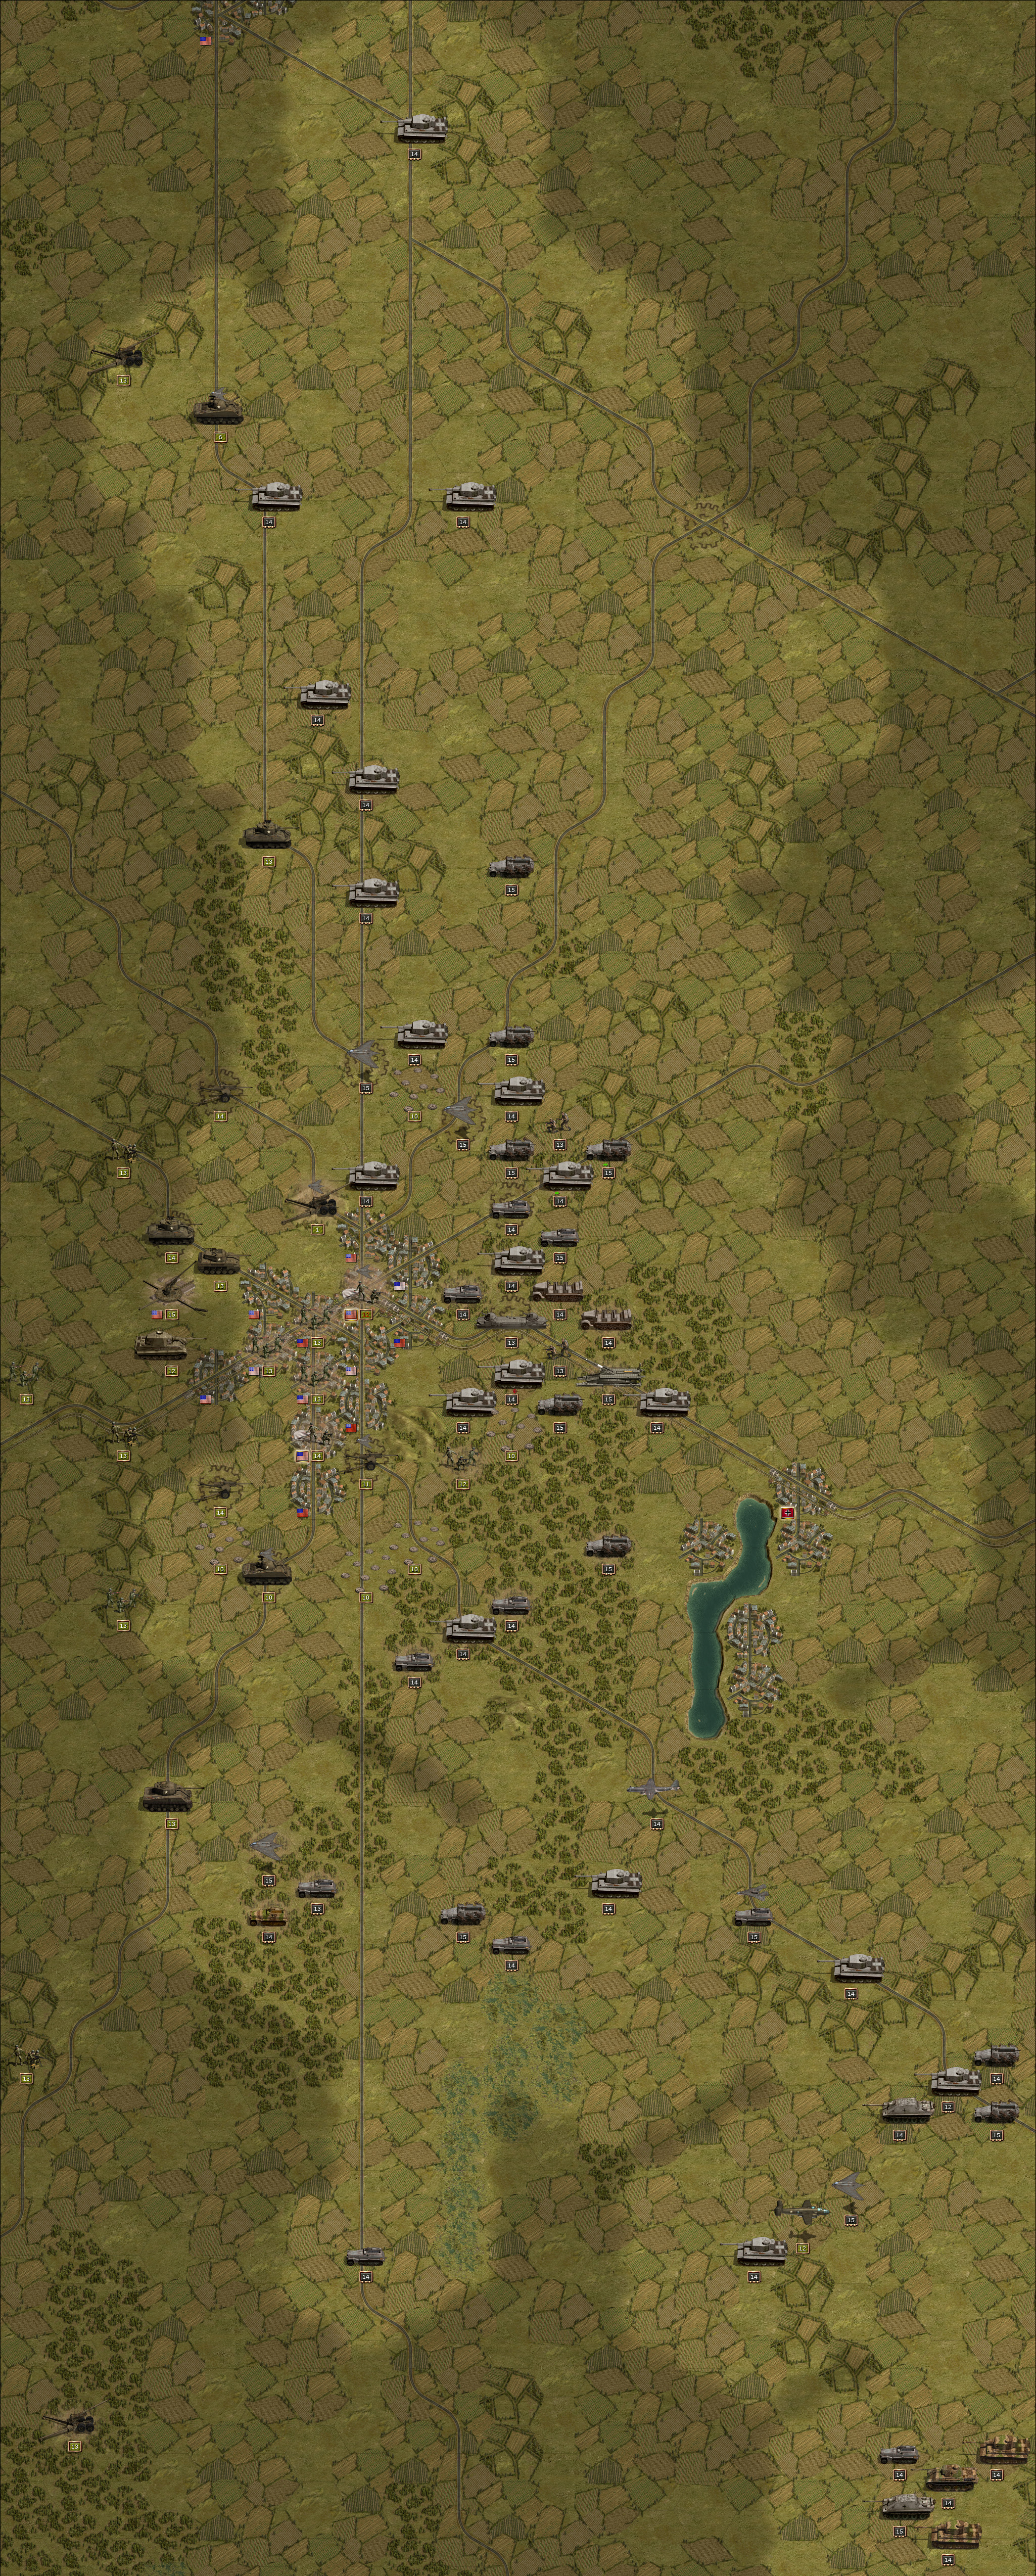 Panzerschlacht bei Gettysburg Runde 6.jpg